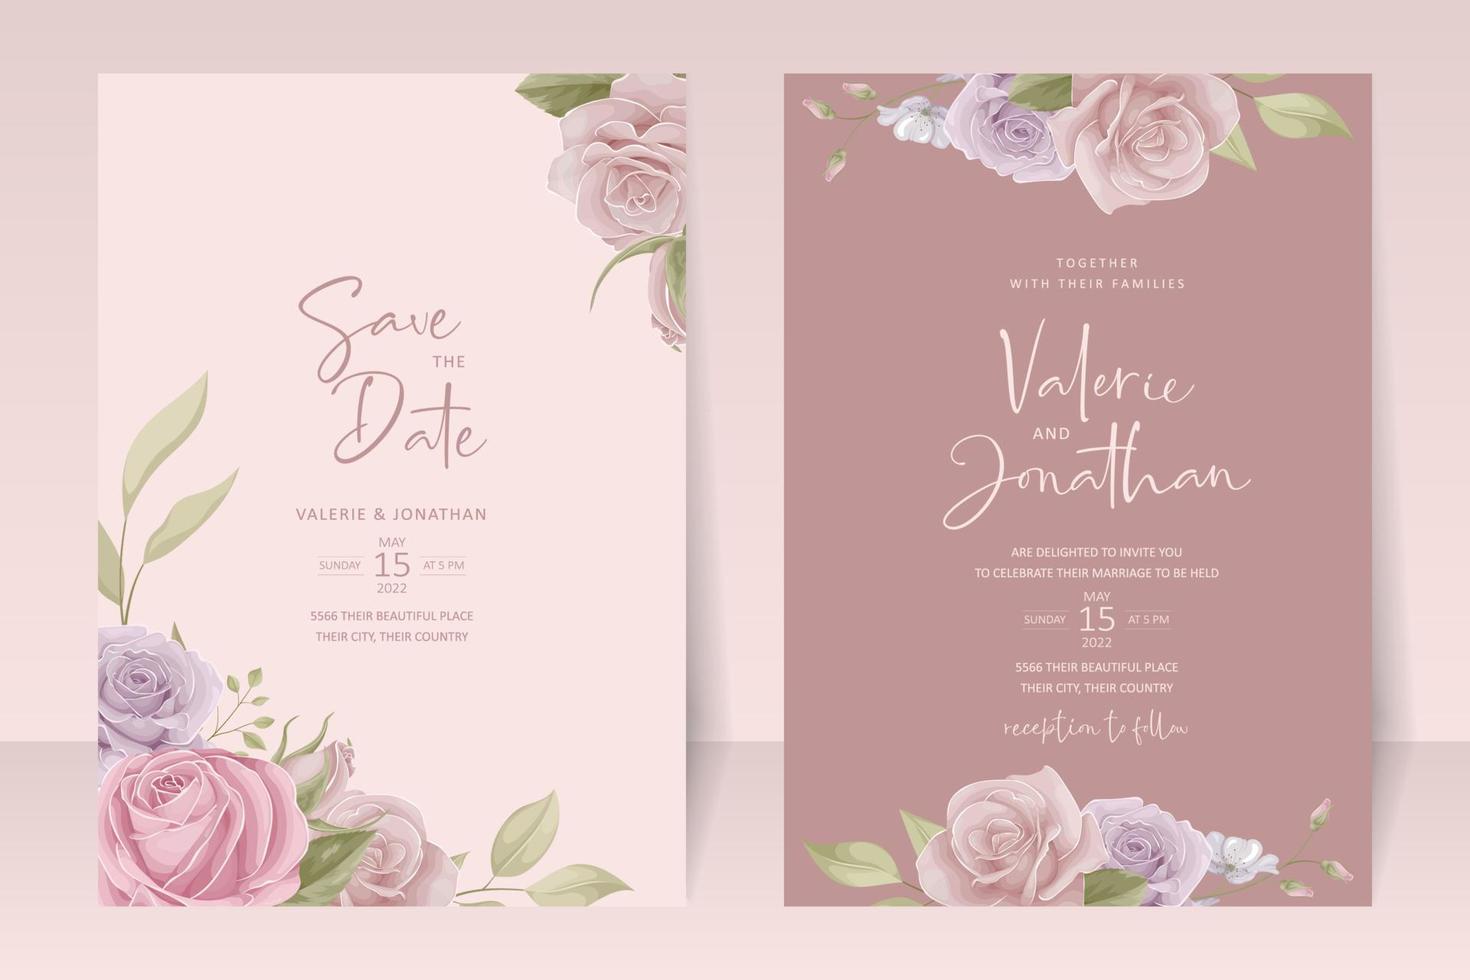 modèle d'invitation de mariage avec un design de fleur rose vecteur